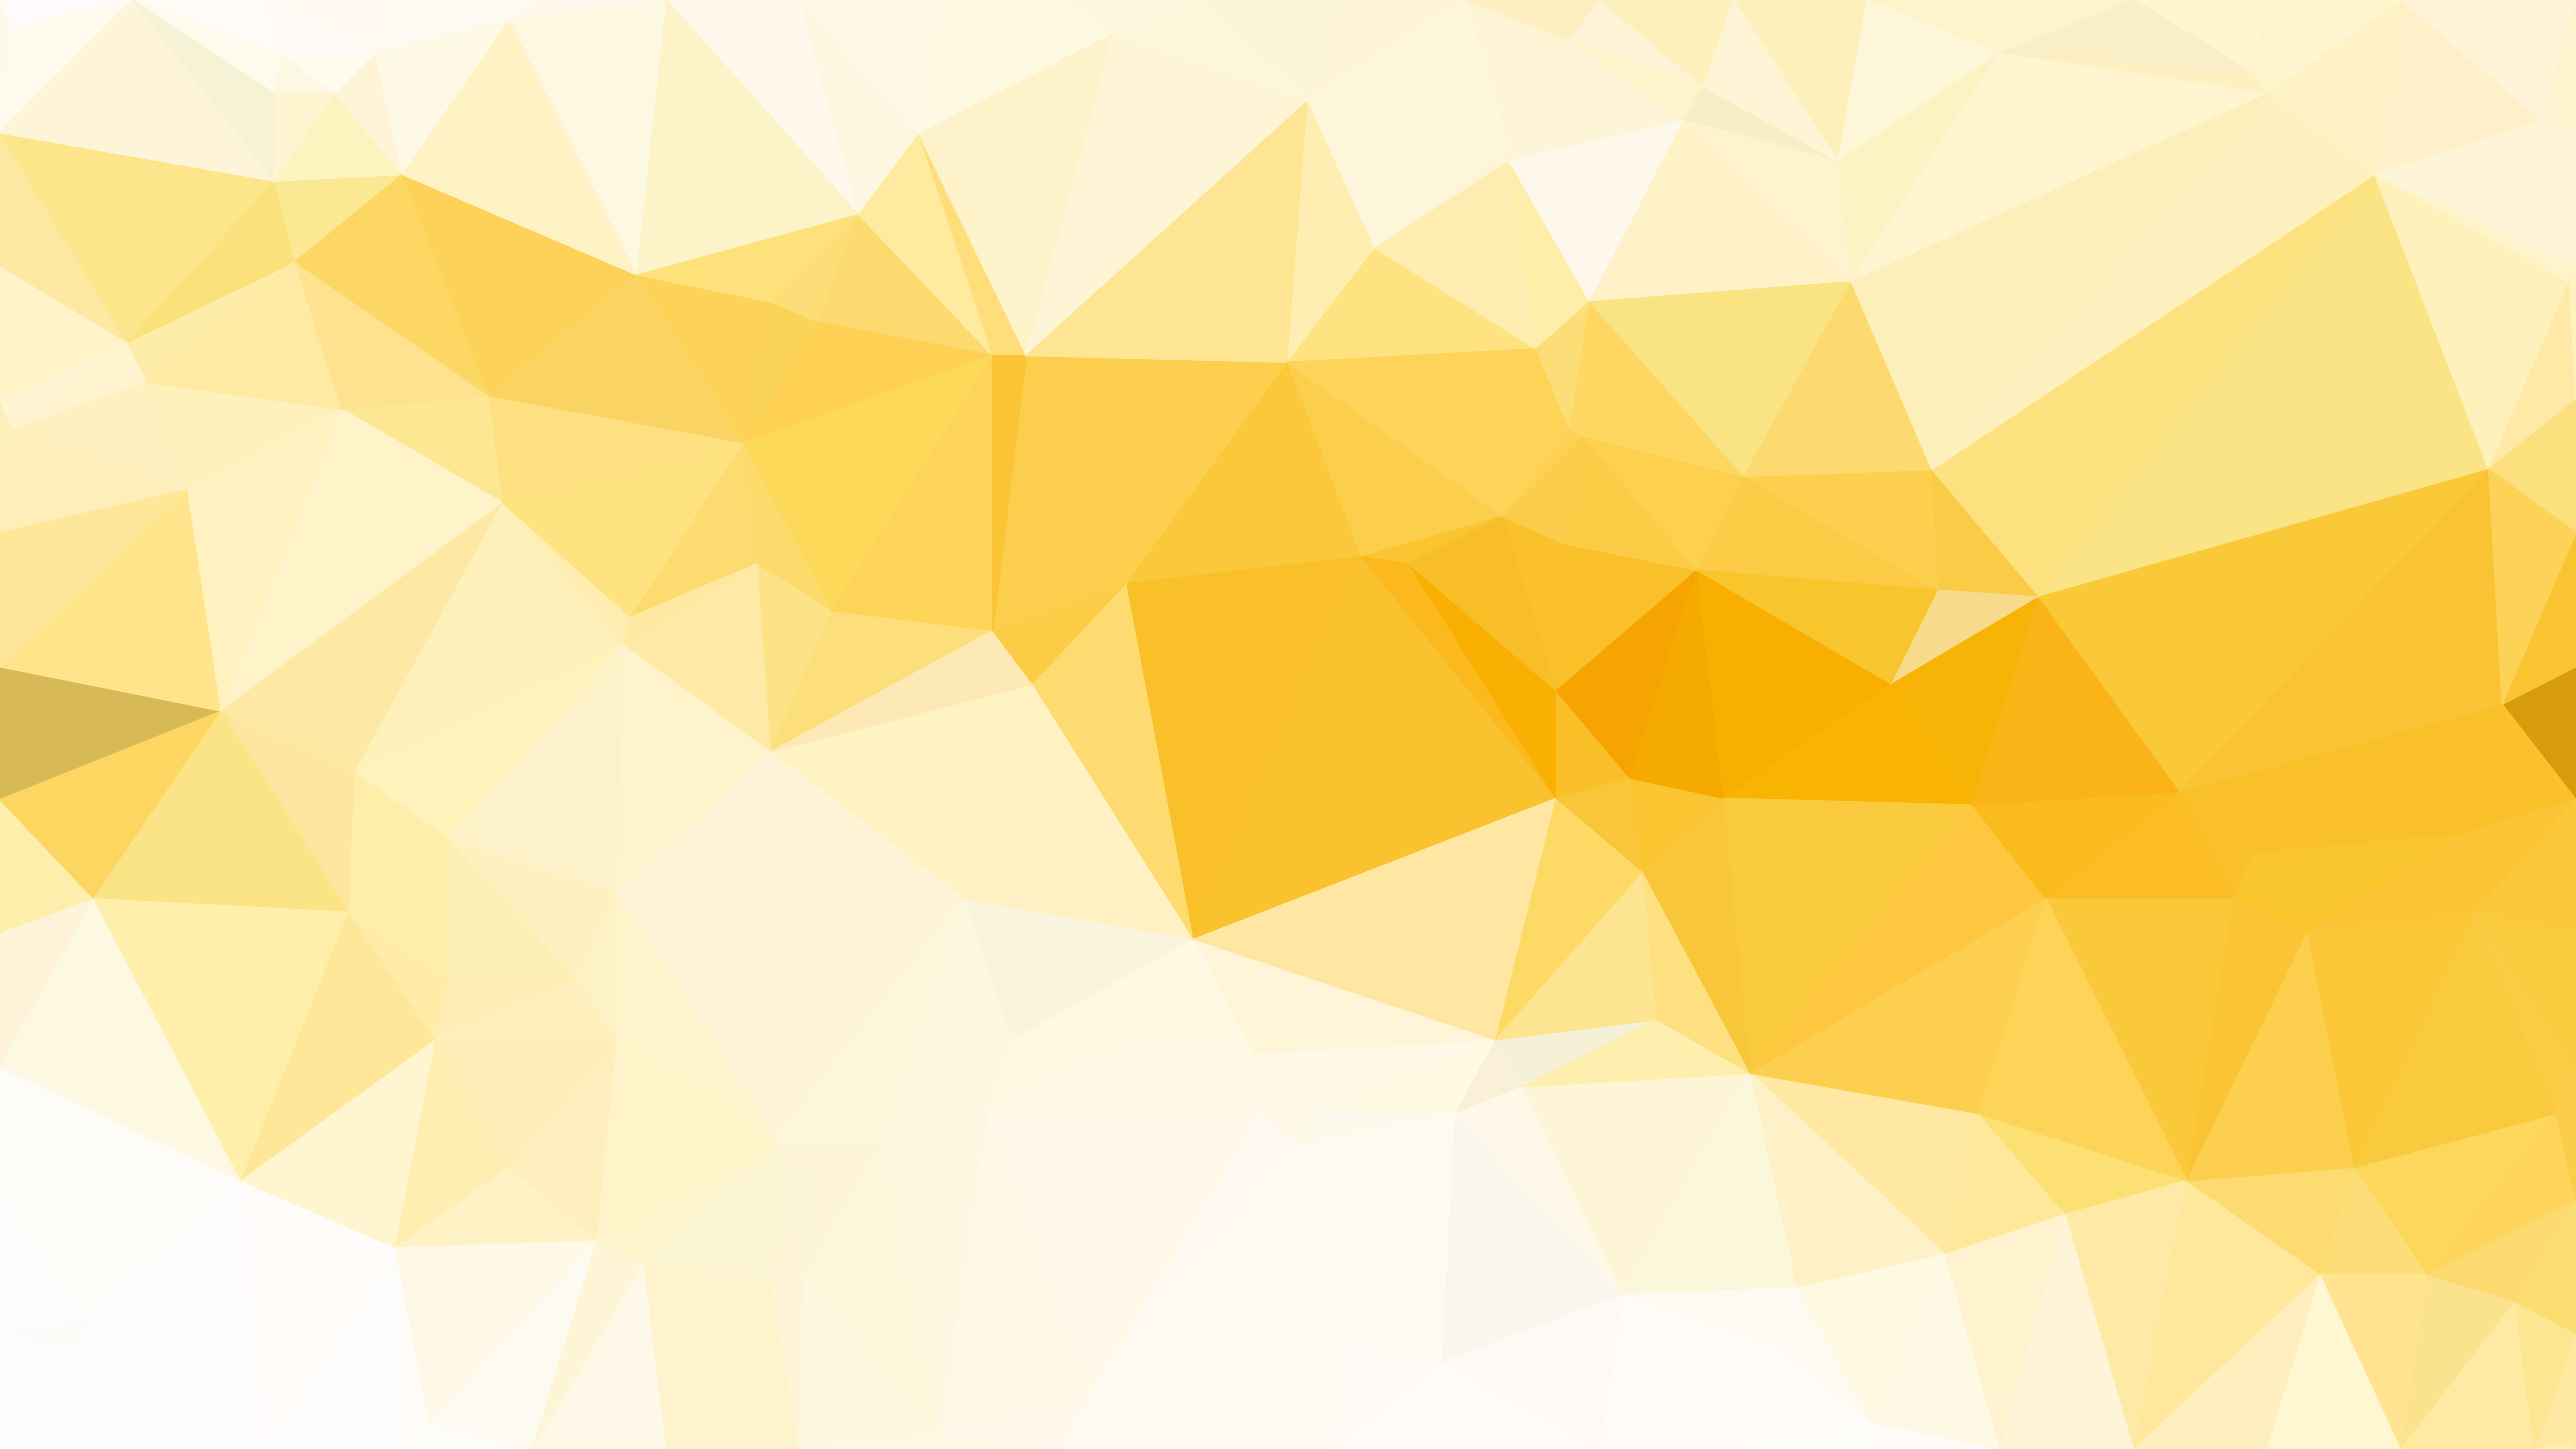 Nền tam giác đa giác màu cam và trắng trừu tượng miễn phí mang đến một trải nghiệm miễn phí tuyệt vời cho bạn. Hãy khám phá những nét đơn giản trong tam giác đa giác màu cam và trắng trên nền trắng và cảm nhận sự đơn giản và tinh tế của nghệ thuật hình học trừu tượng.